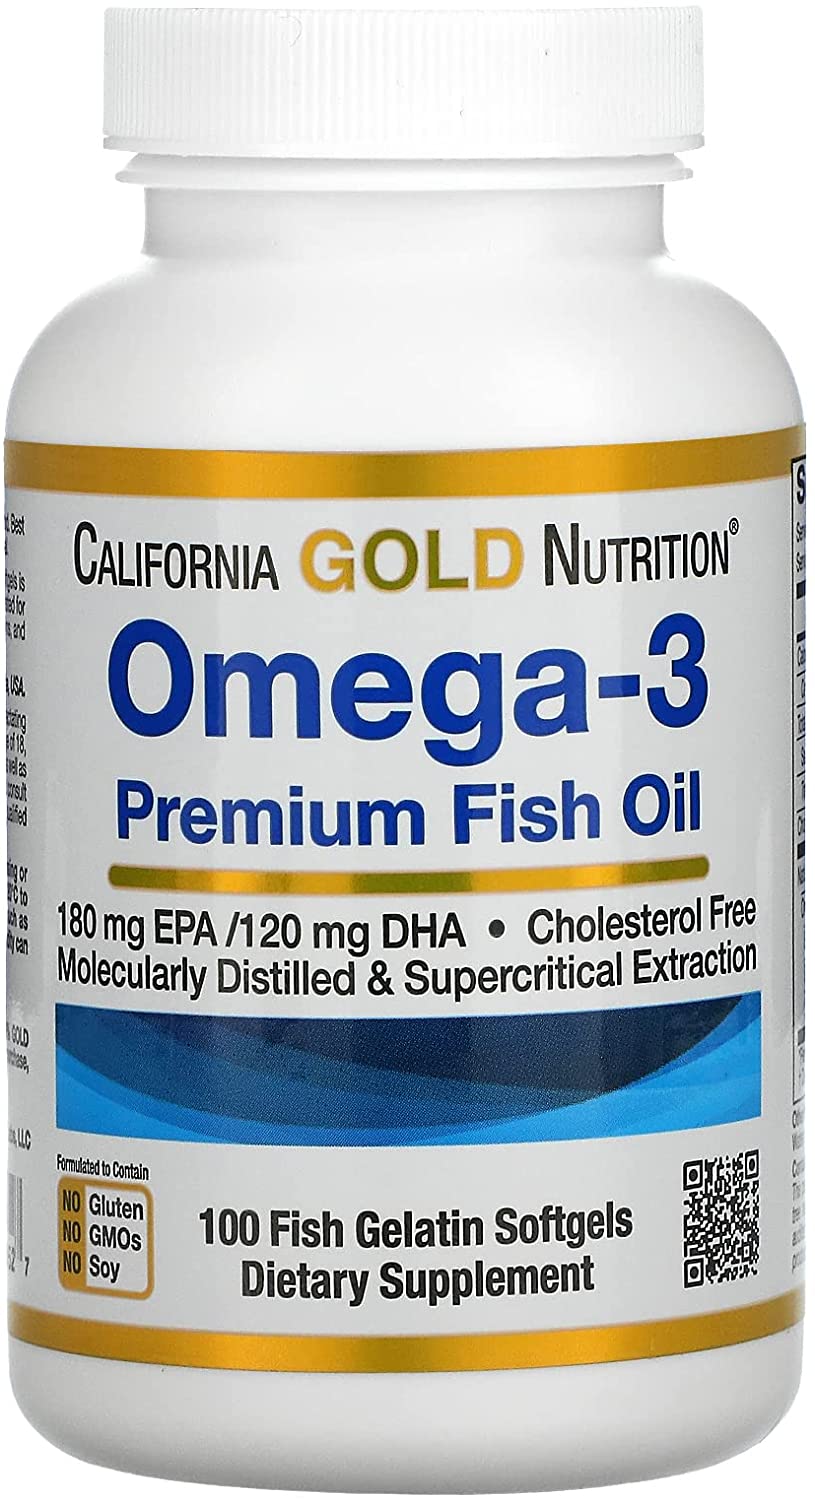  カリフォルニアゴールドニュートリション オメガ 3 サプリメント dha epaサプリ epa サプリ オメガ3脂肪酸 フィッシュオイル 健康サプリ 美容 おめが3 プレミアムフィッシュオイル omega3 dha&epa ソフトカプセル 海外